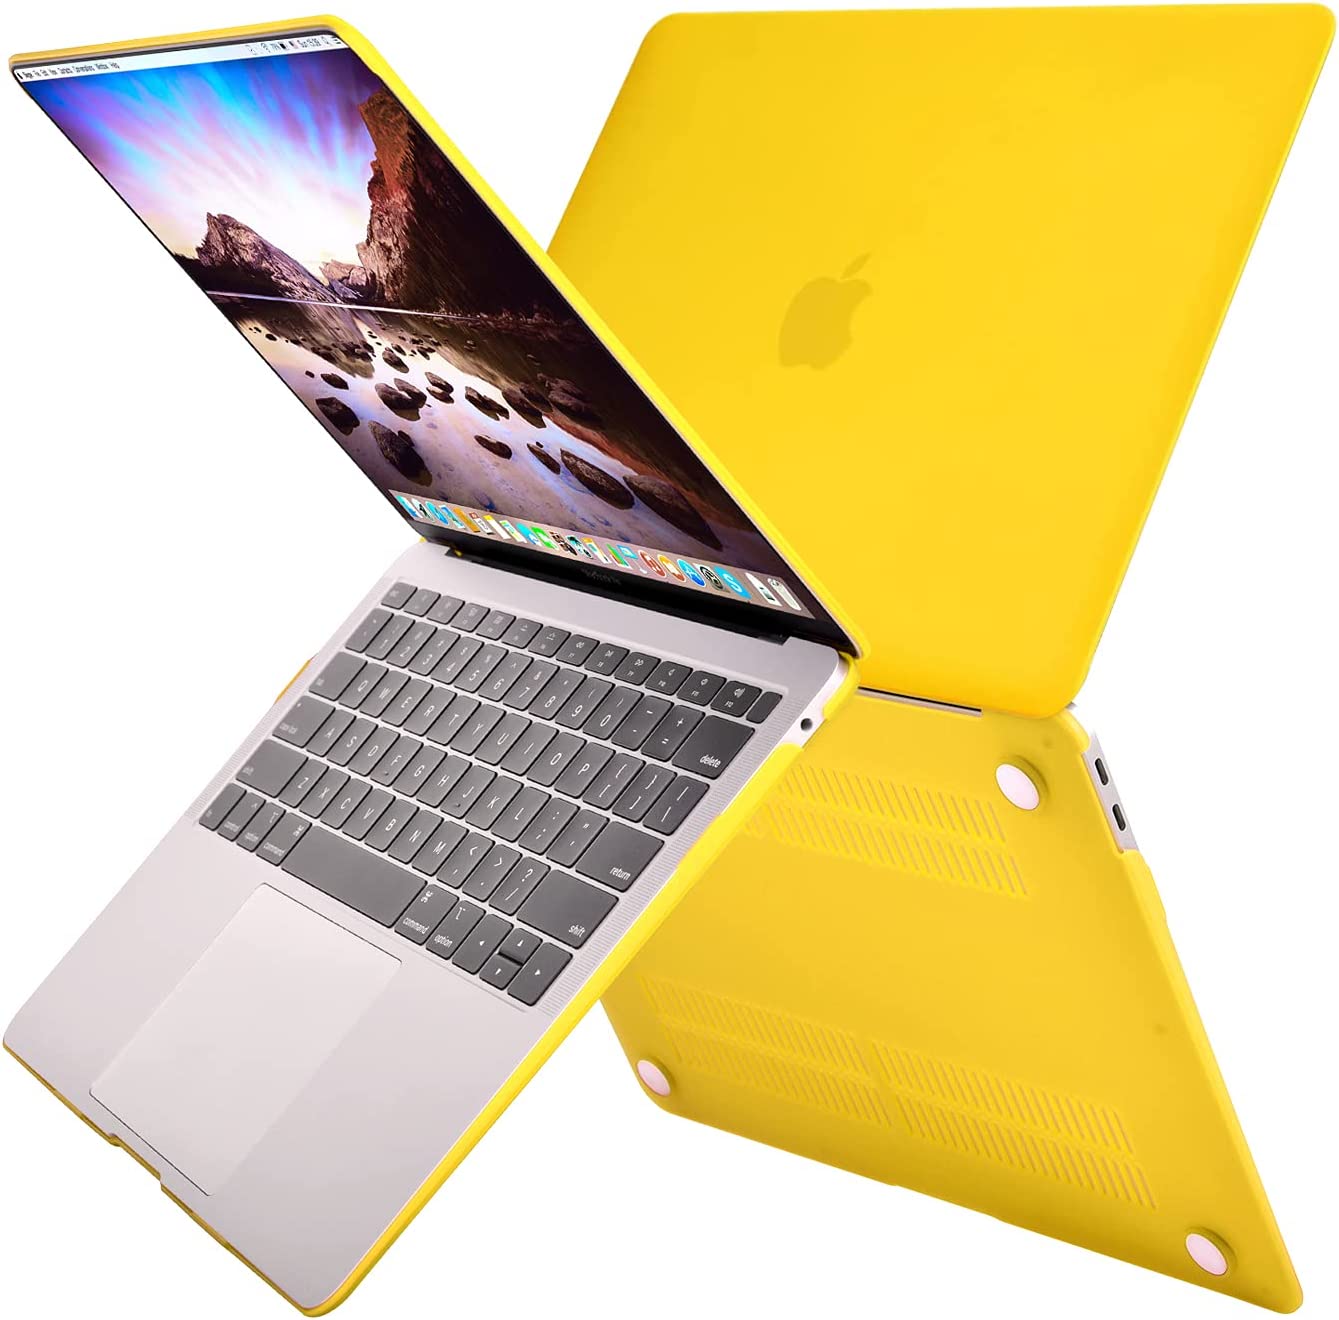 MacBook Air yellow cover